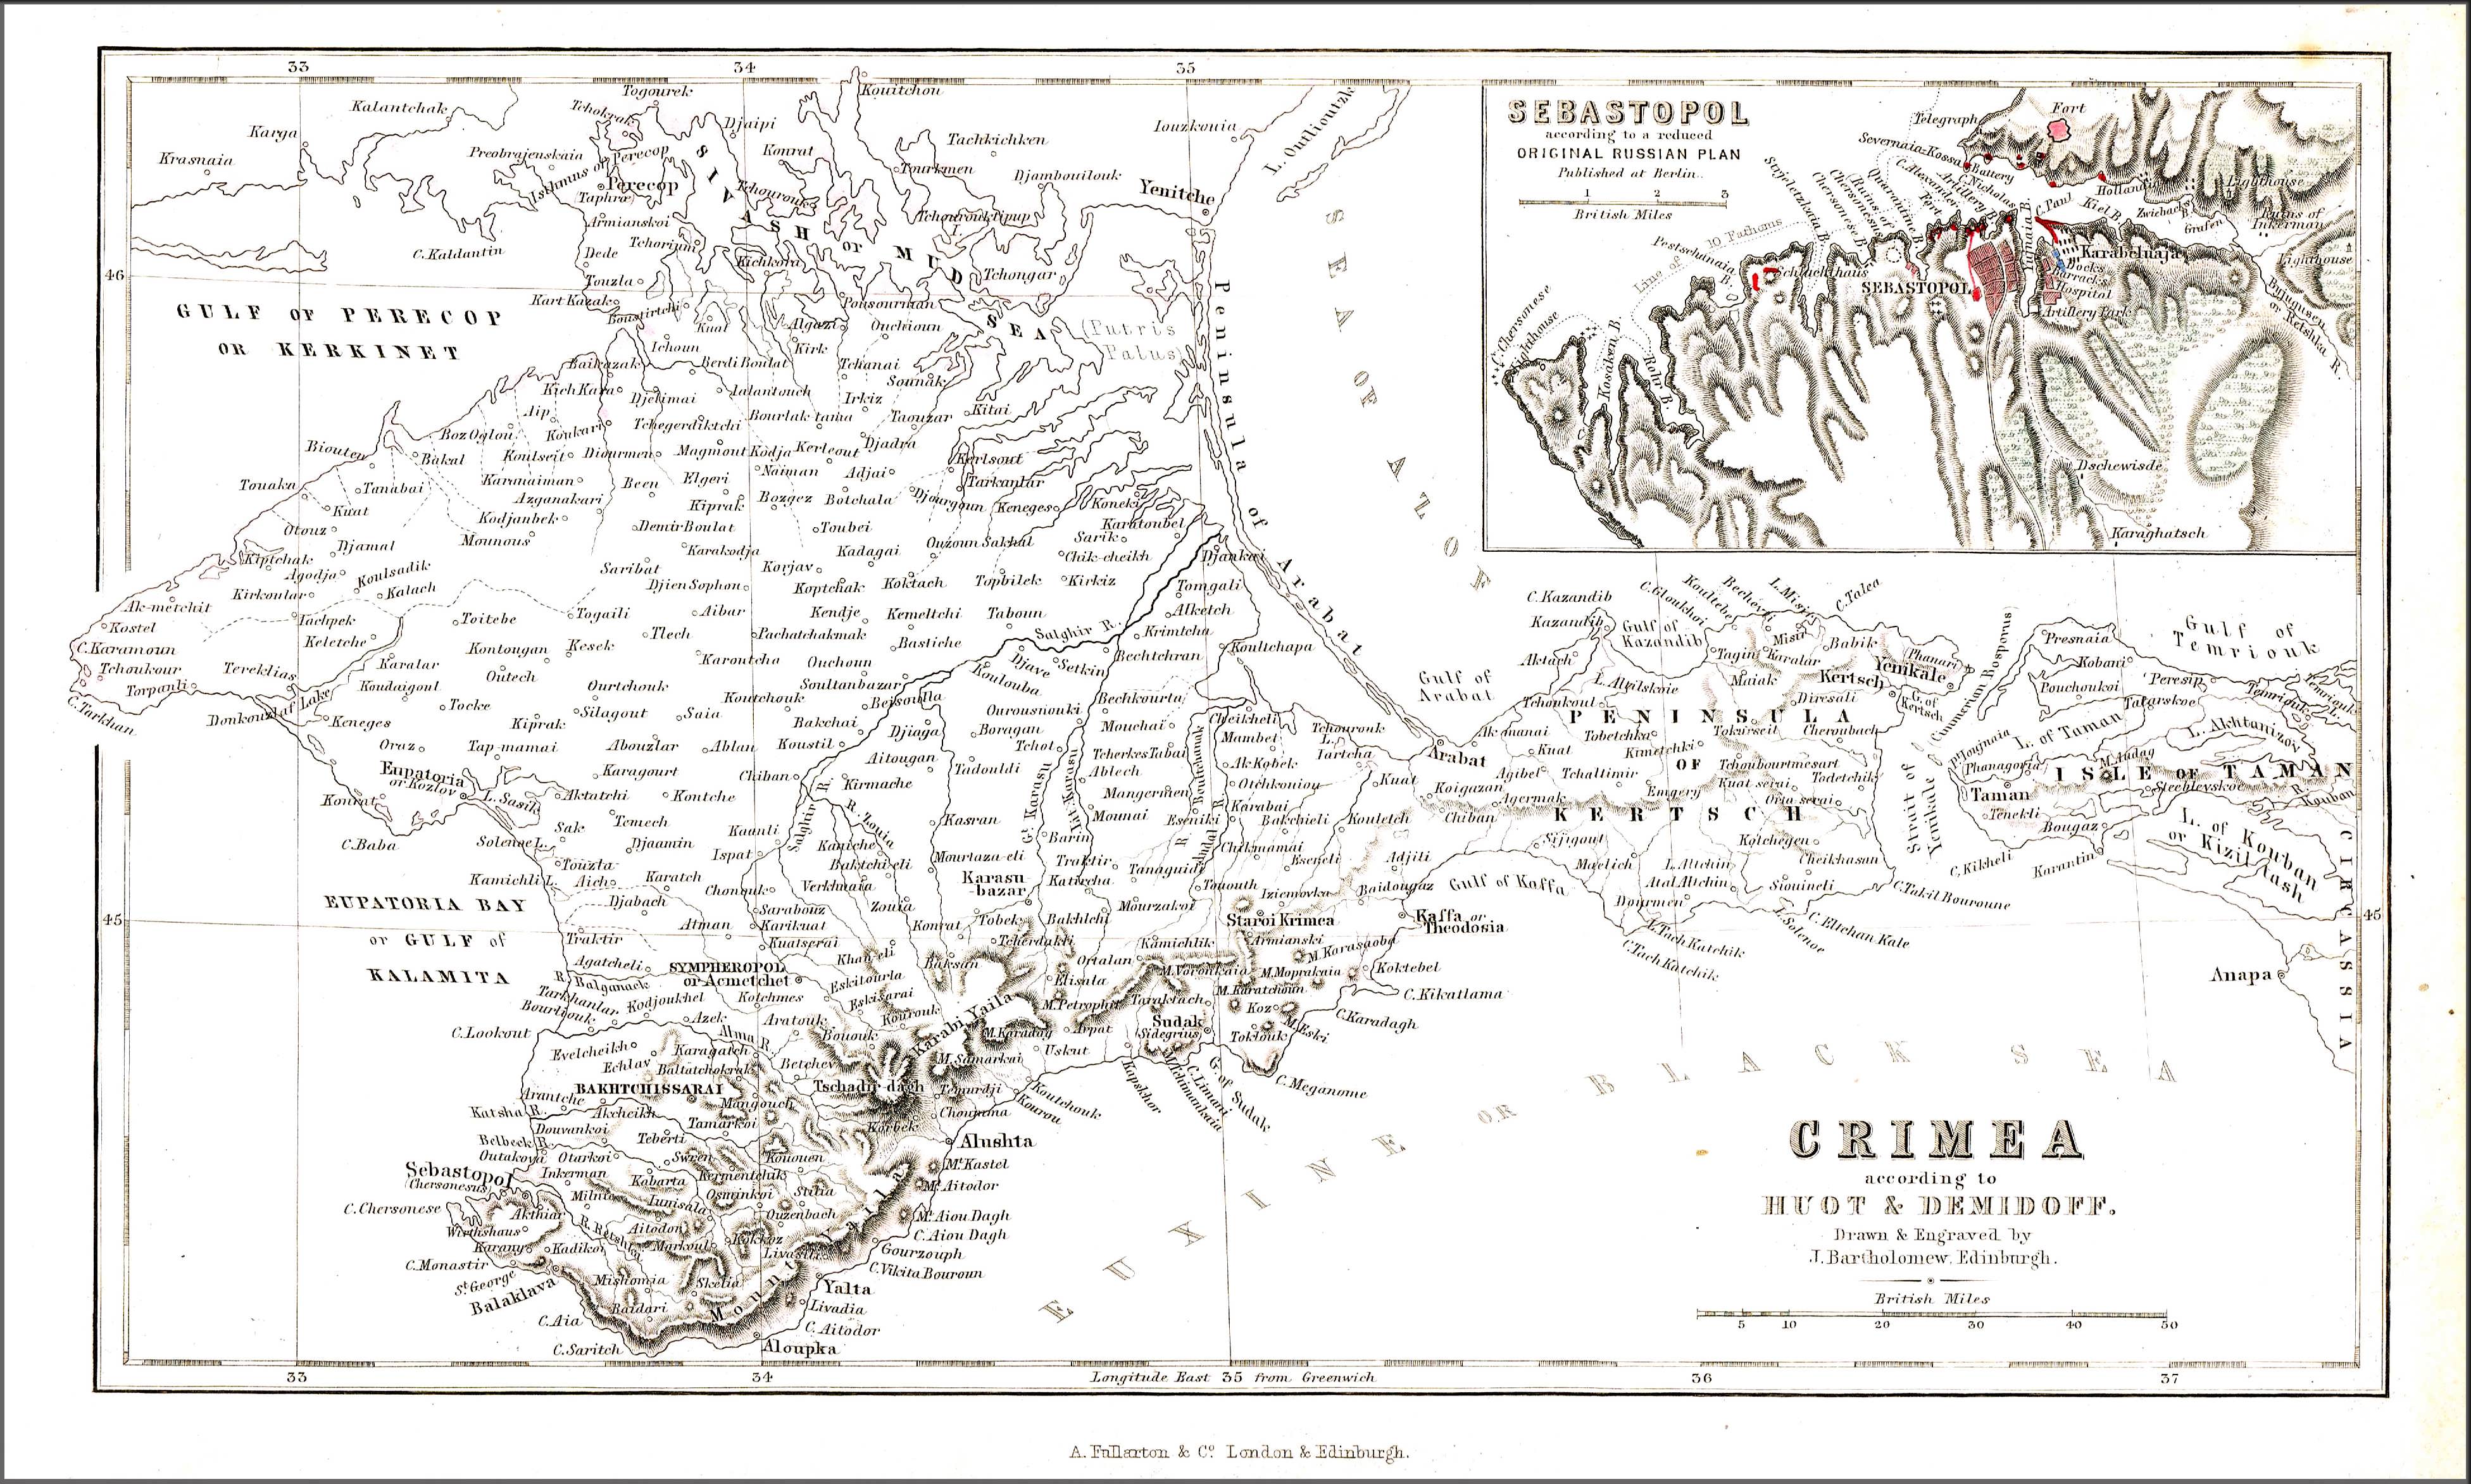 Крым 10 век